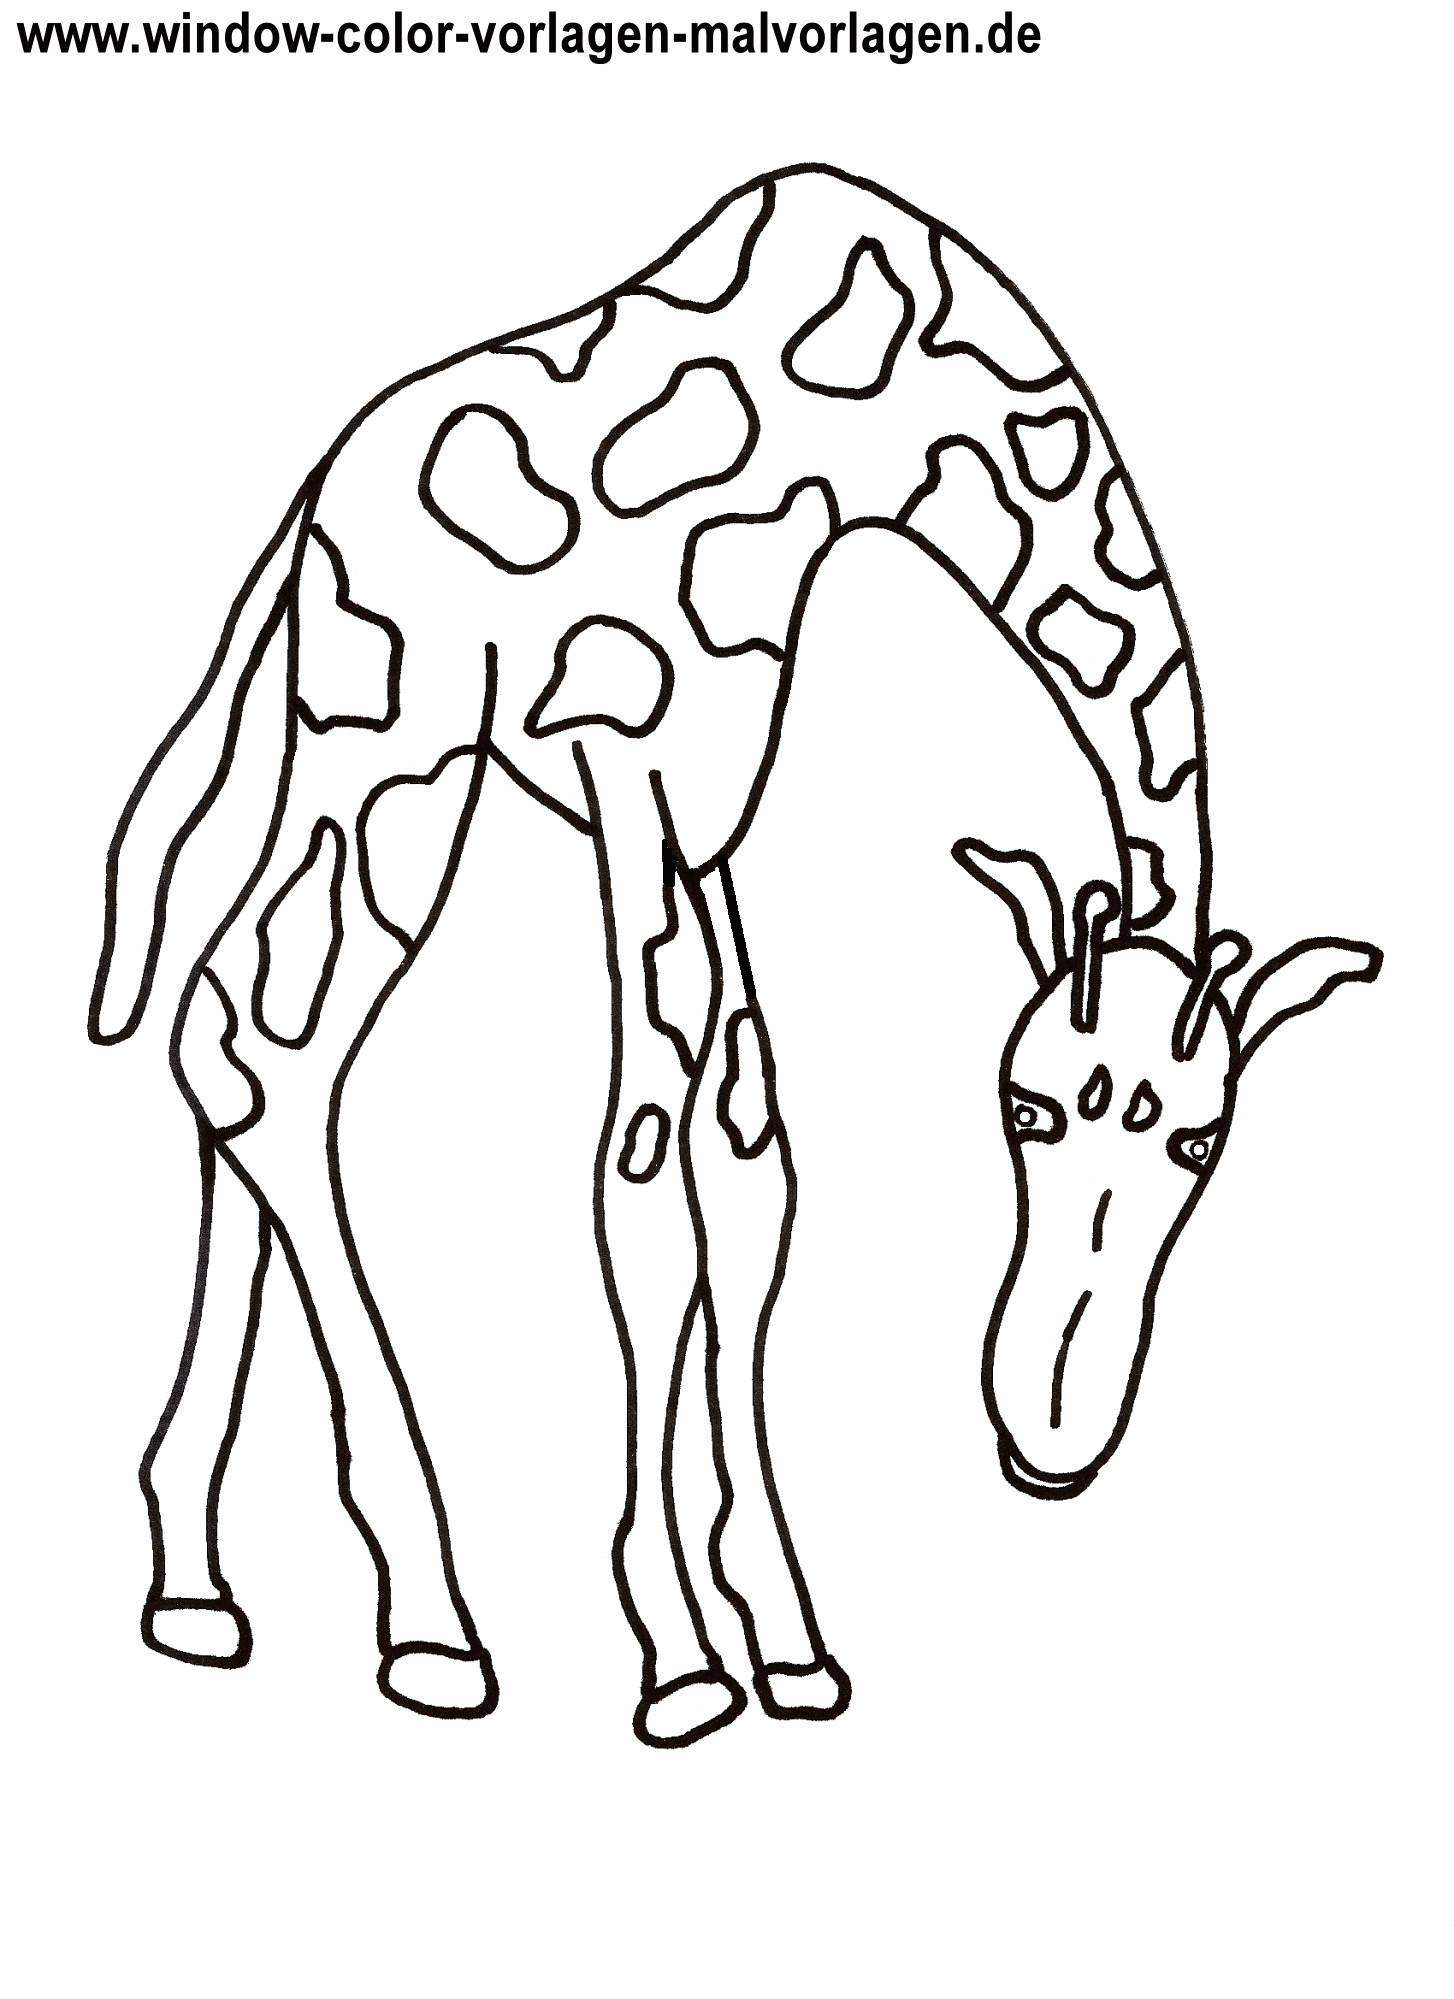 Ausmalbilder Tiere Zum Ausdrucken
 Ausmalbilder giraffe kostenlos Malvorlagen zum